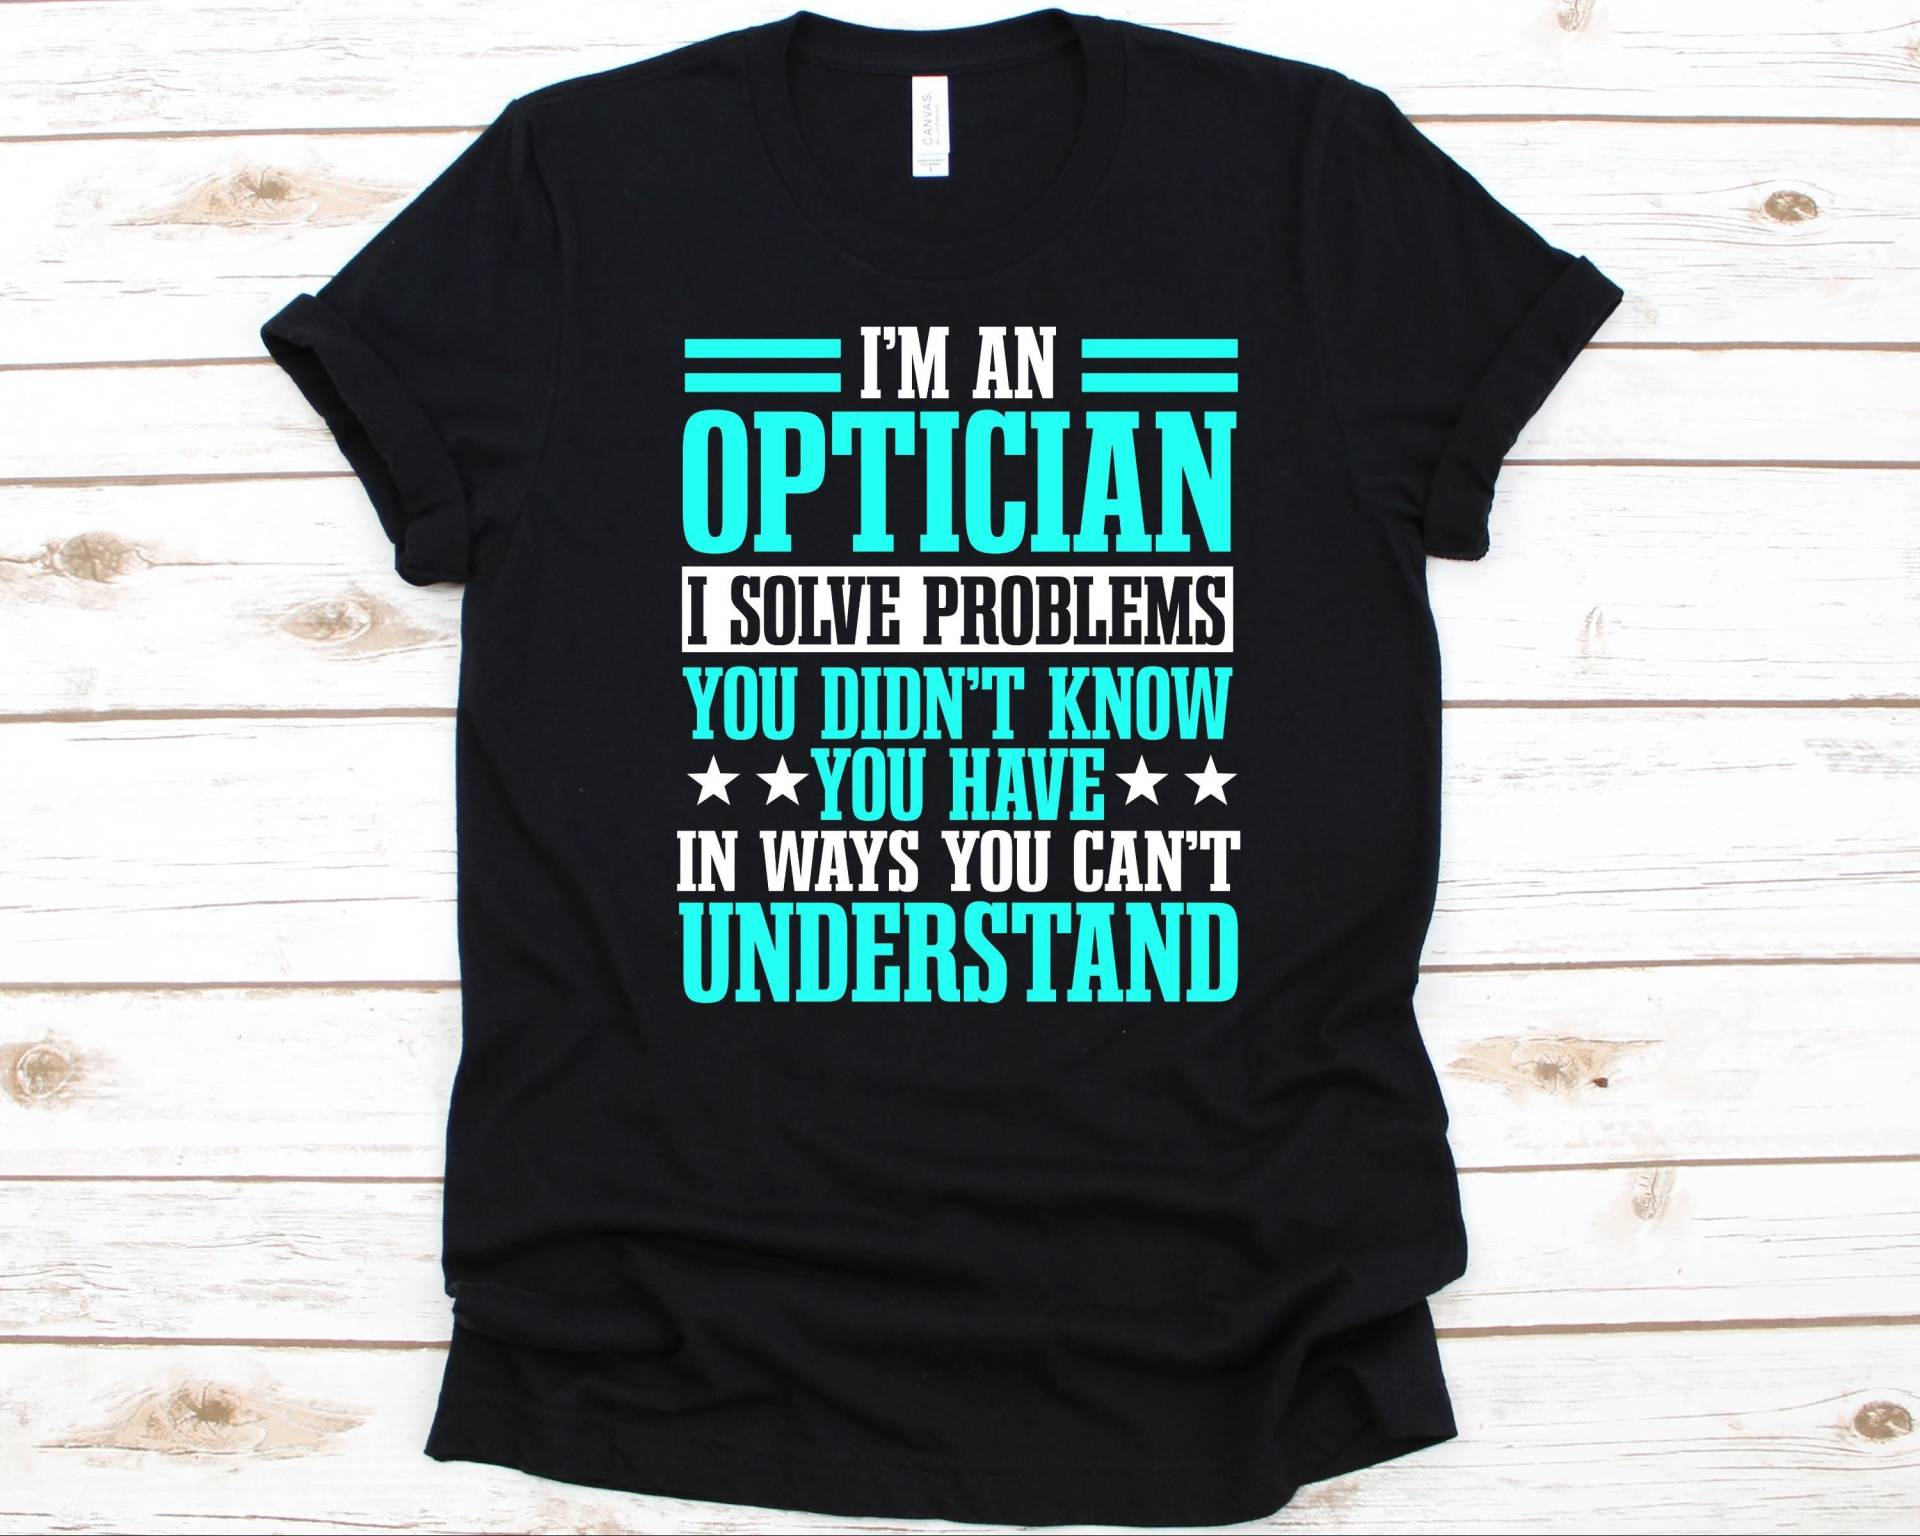 I'm An Optician I Solve Problems You Didn't Know Shirt, Technical Practitioner Design, Geschenk Für Spender Optiker, Techniker Grafik von AbbysDesignFactory